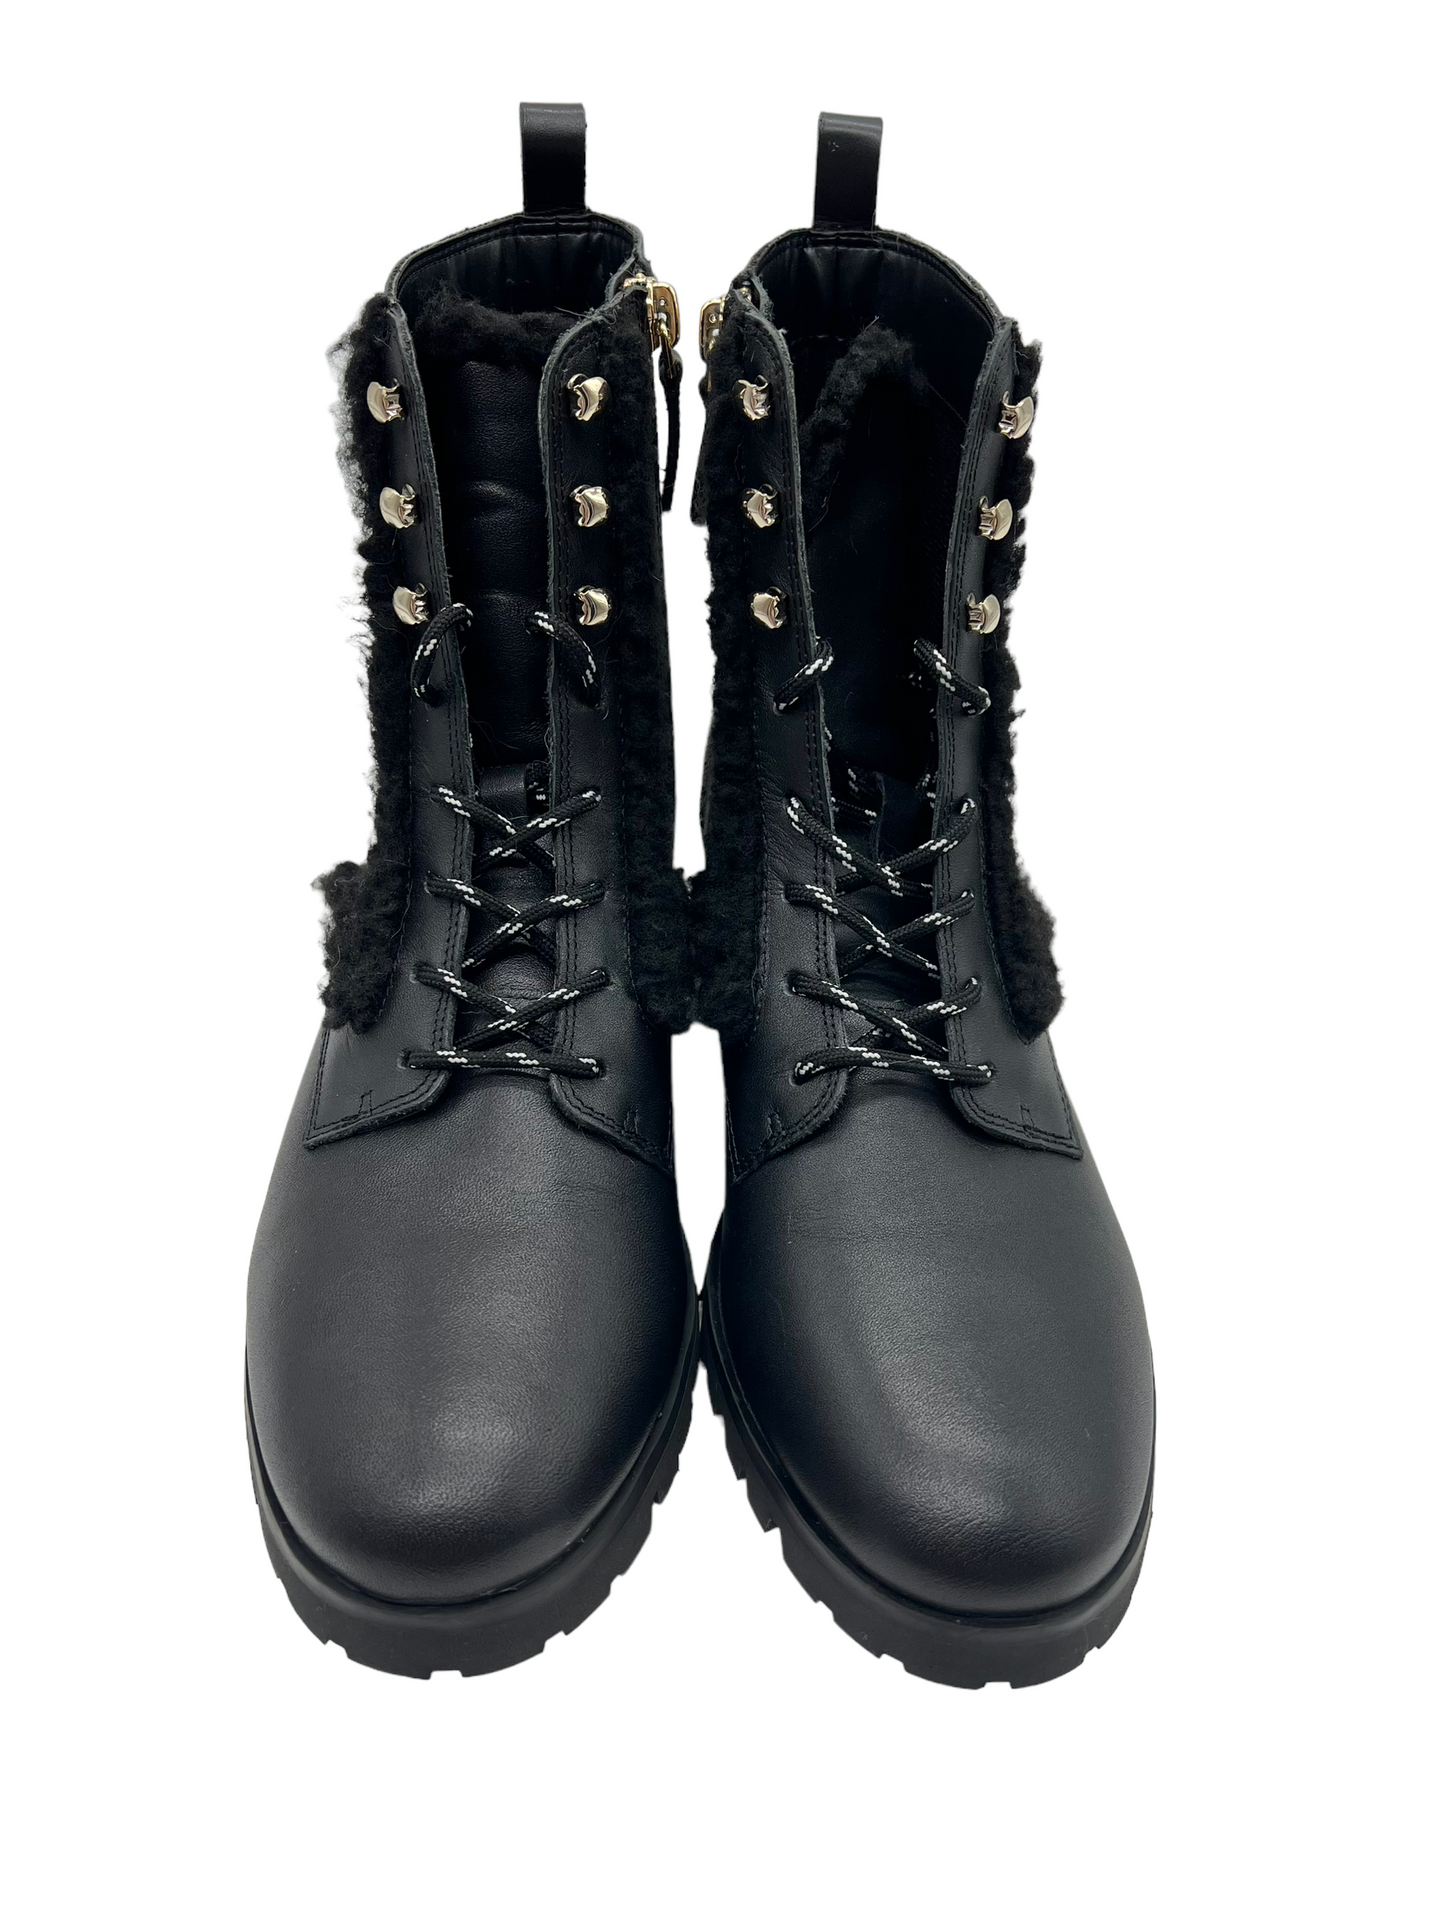 Kate Spade Black Leather Faux Fur Trim Size 7.5 Combat Boots